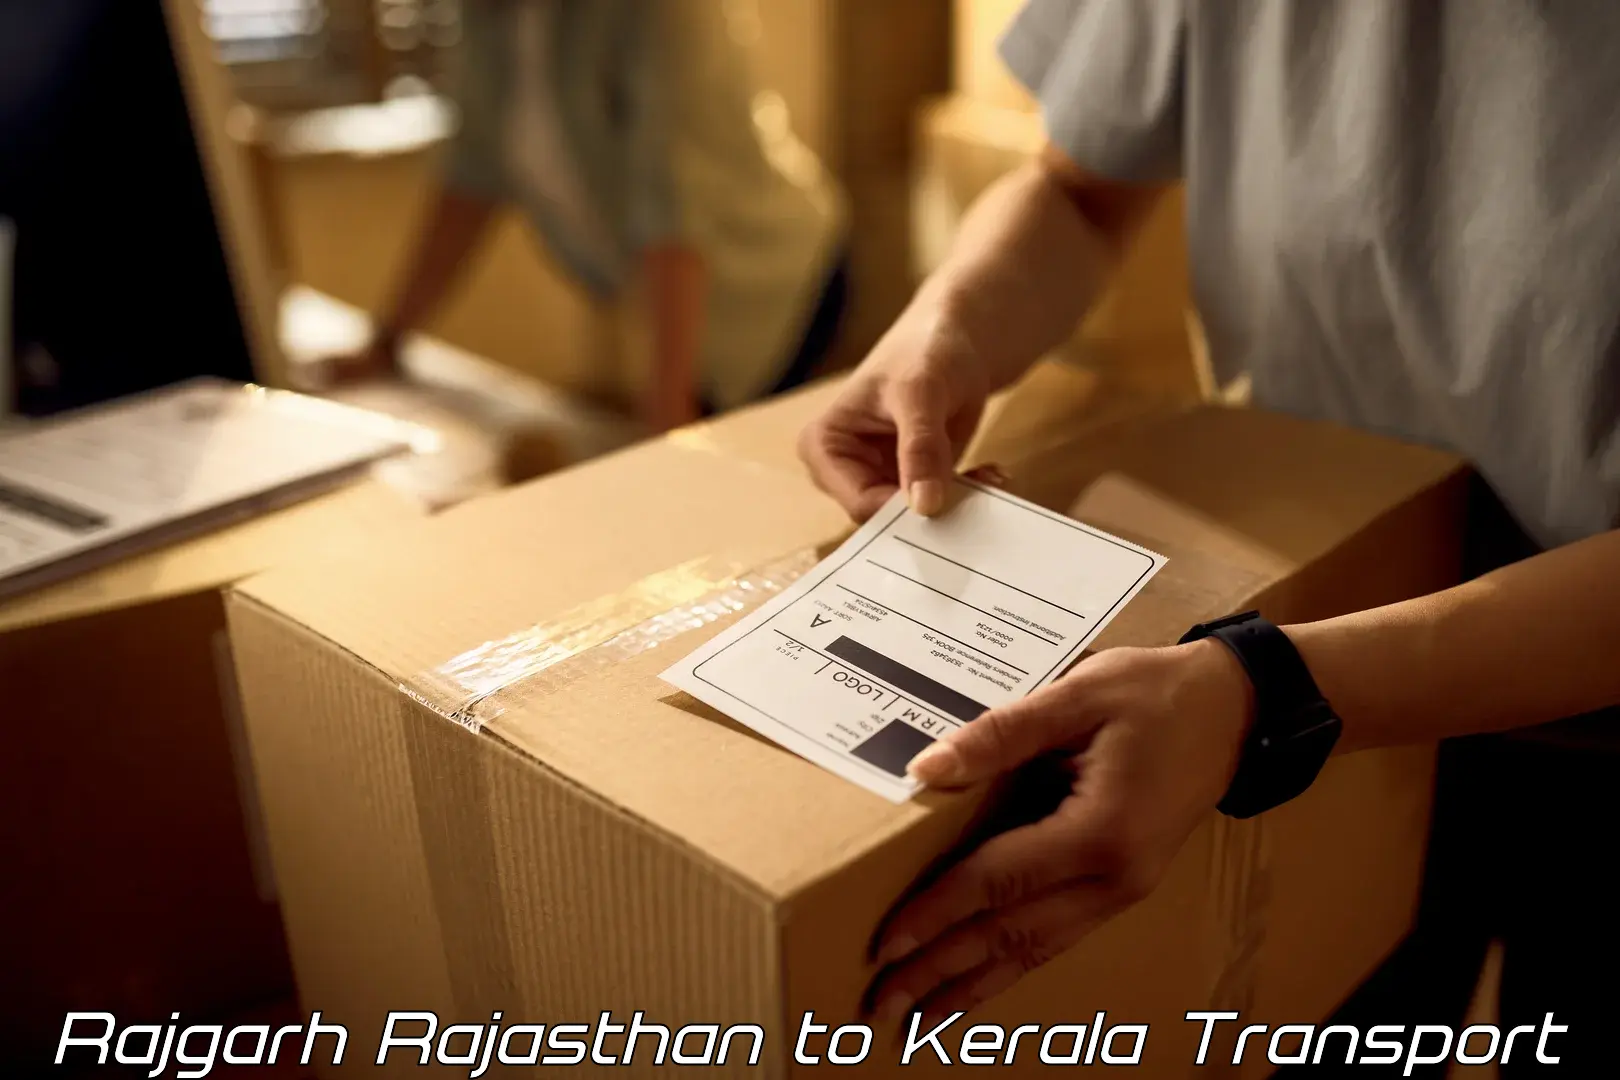 Shipping partner Rajgarh Rajasthan to Kerala